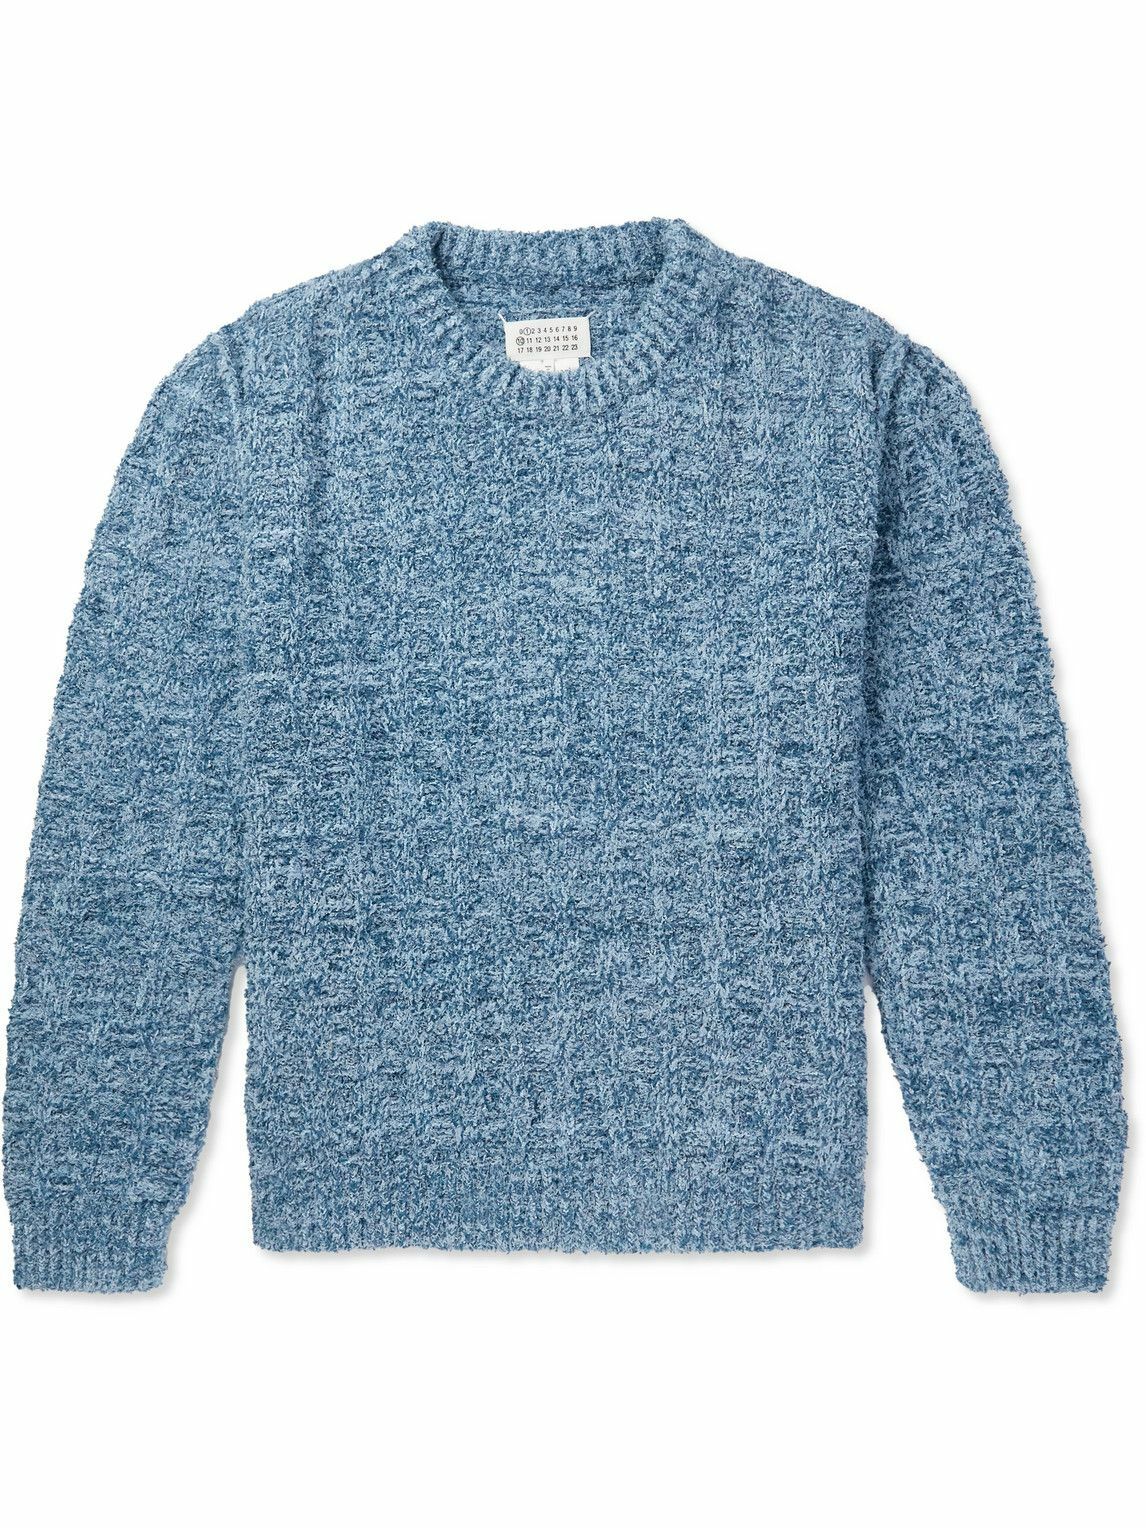 Maison Margiela - Cotton-Blend Bouclé Sweater - Blue Maison Margiela